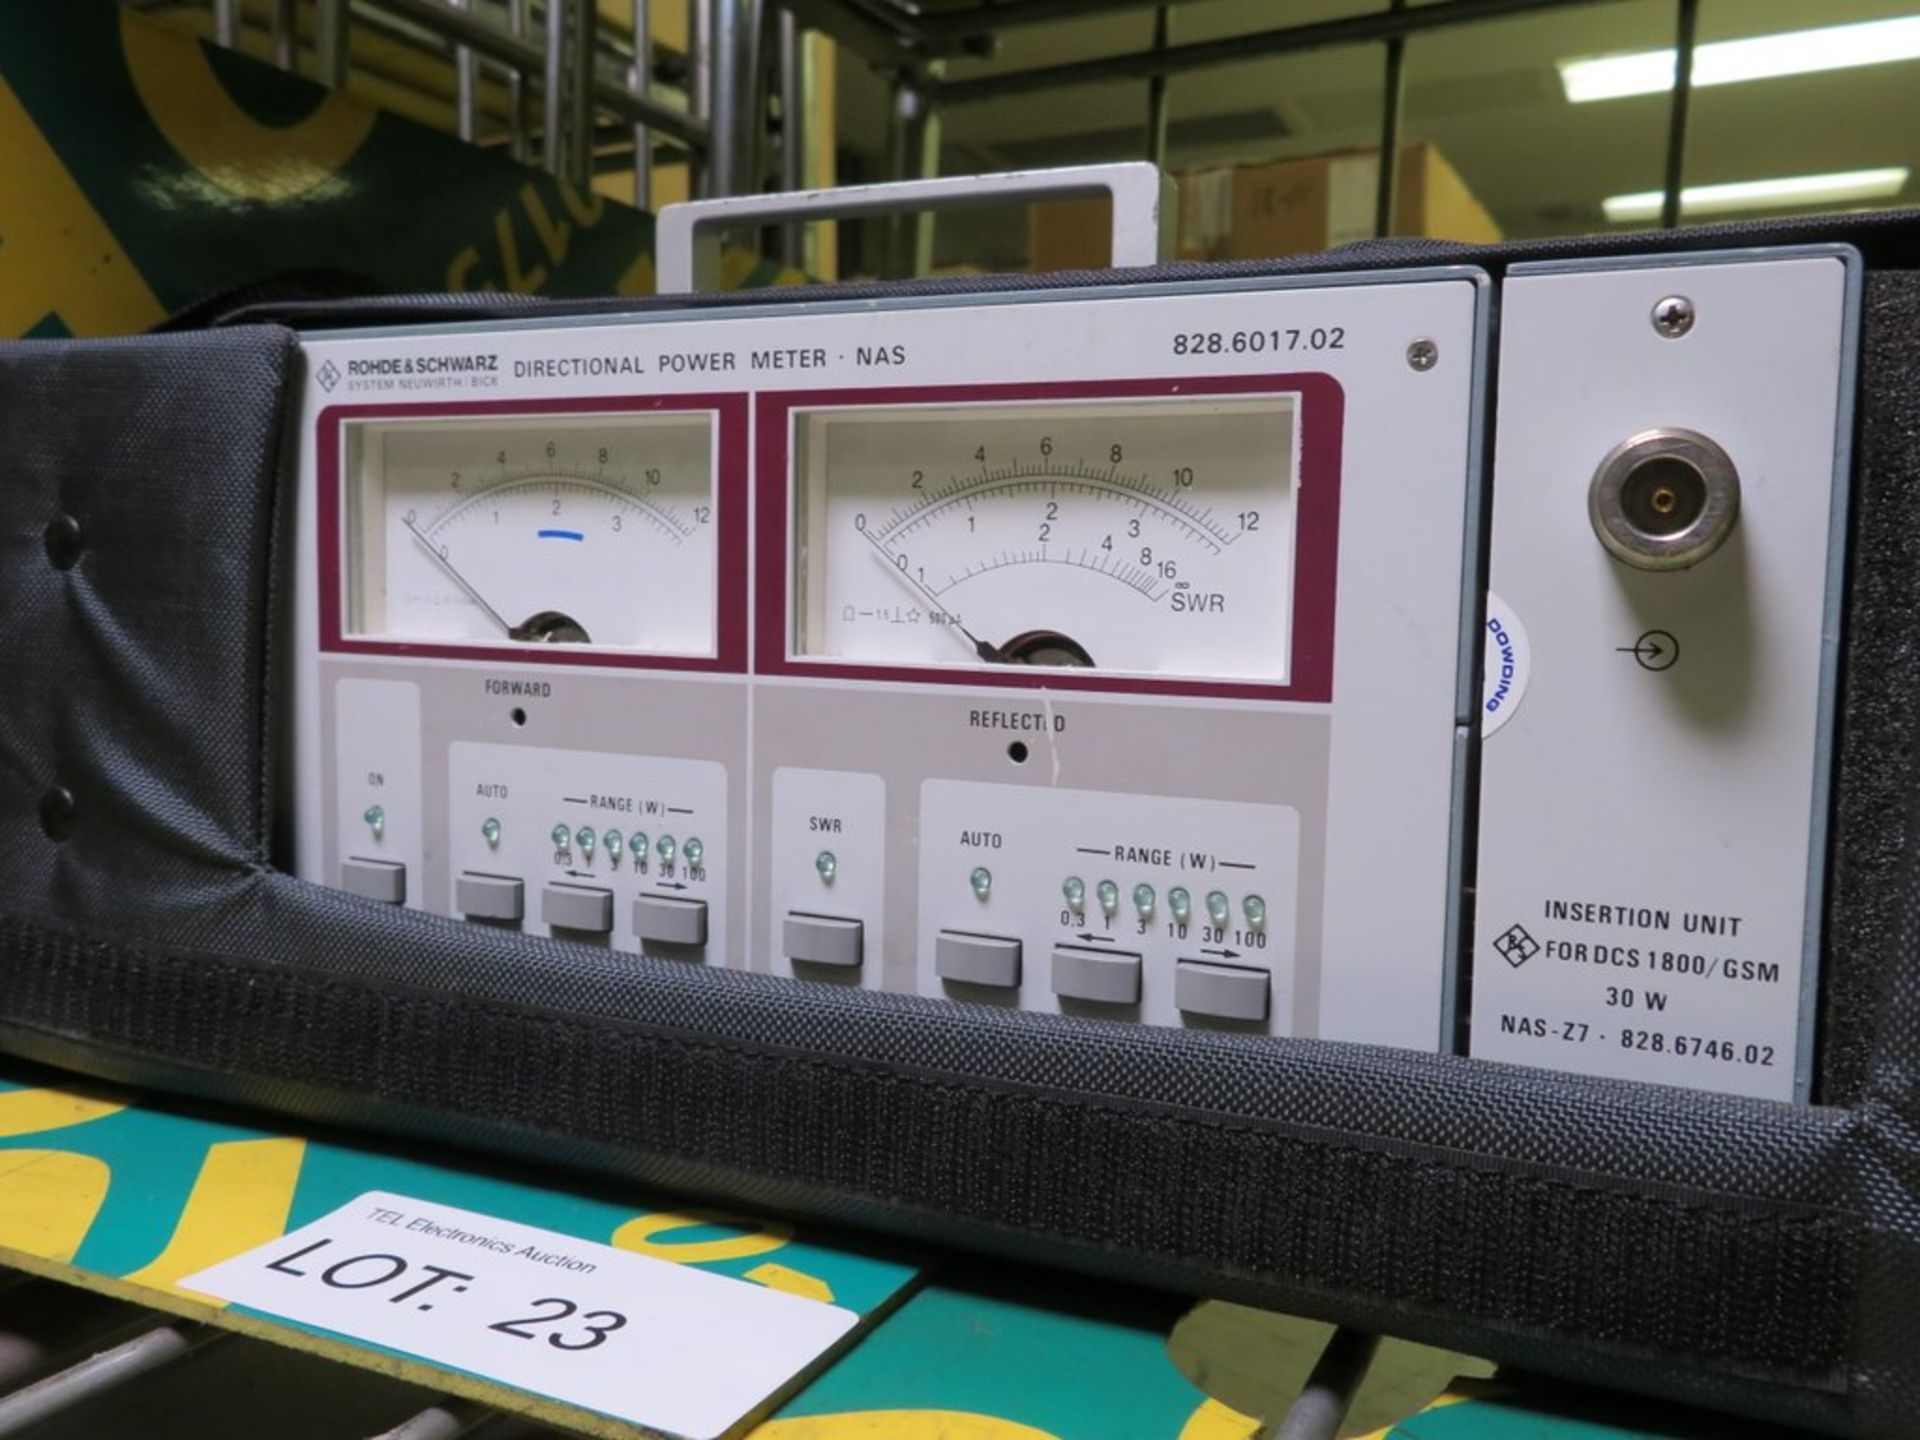 Rohde & Schwartz Directional Power Meter NAS 828.6017.02 - Image 2 of 2